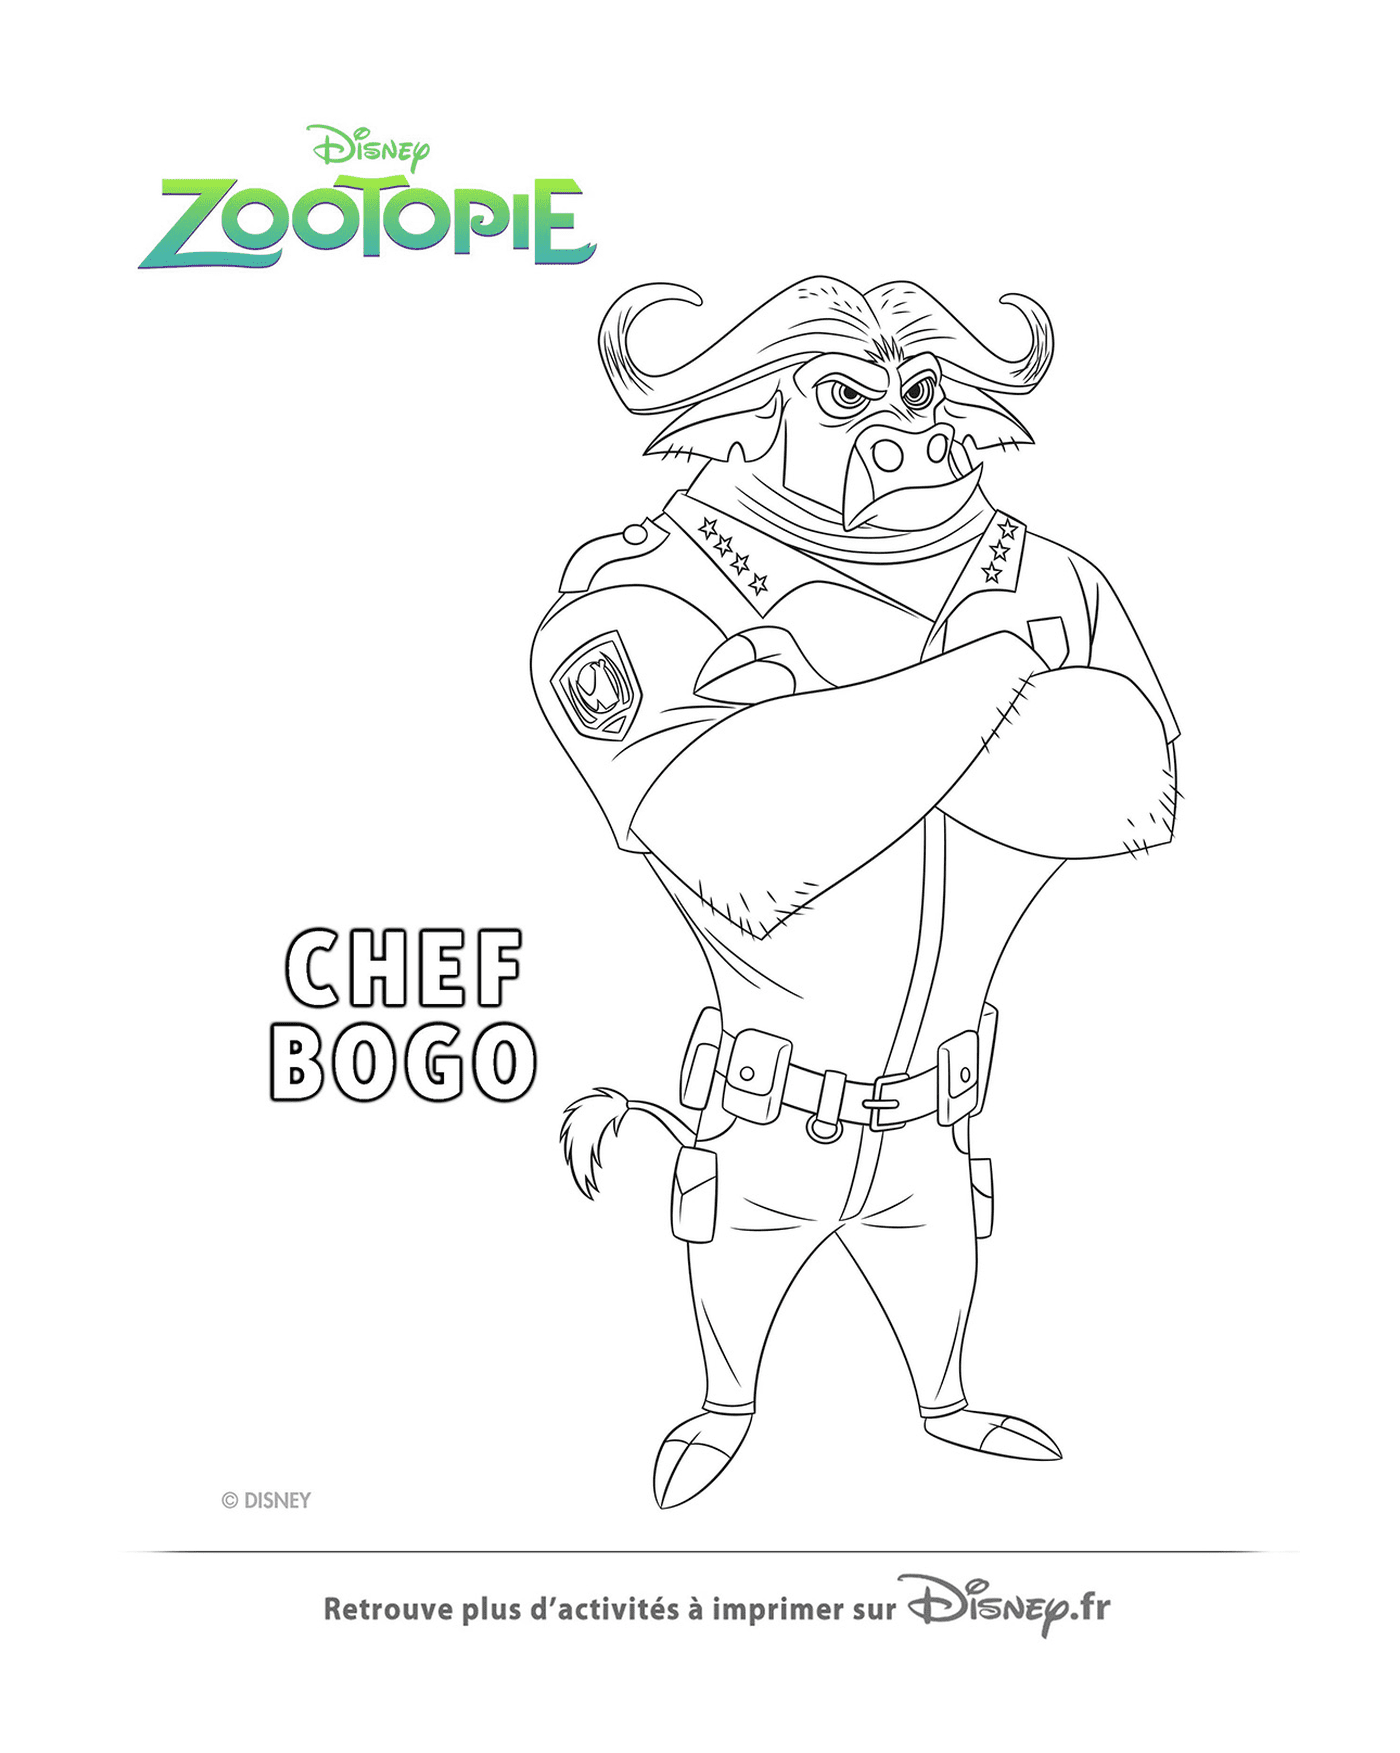  Chef Bogo von der Zootopie Polizei 